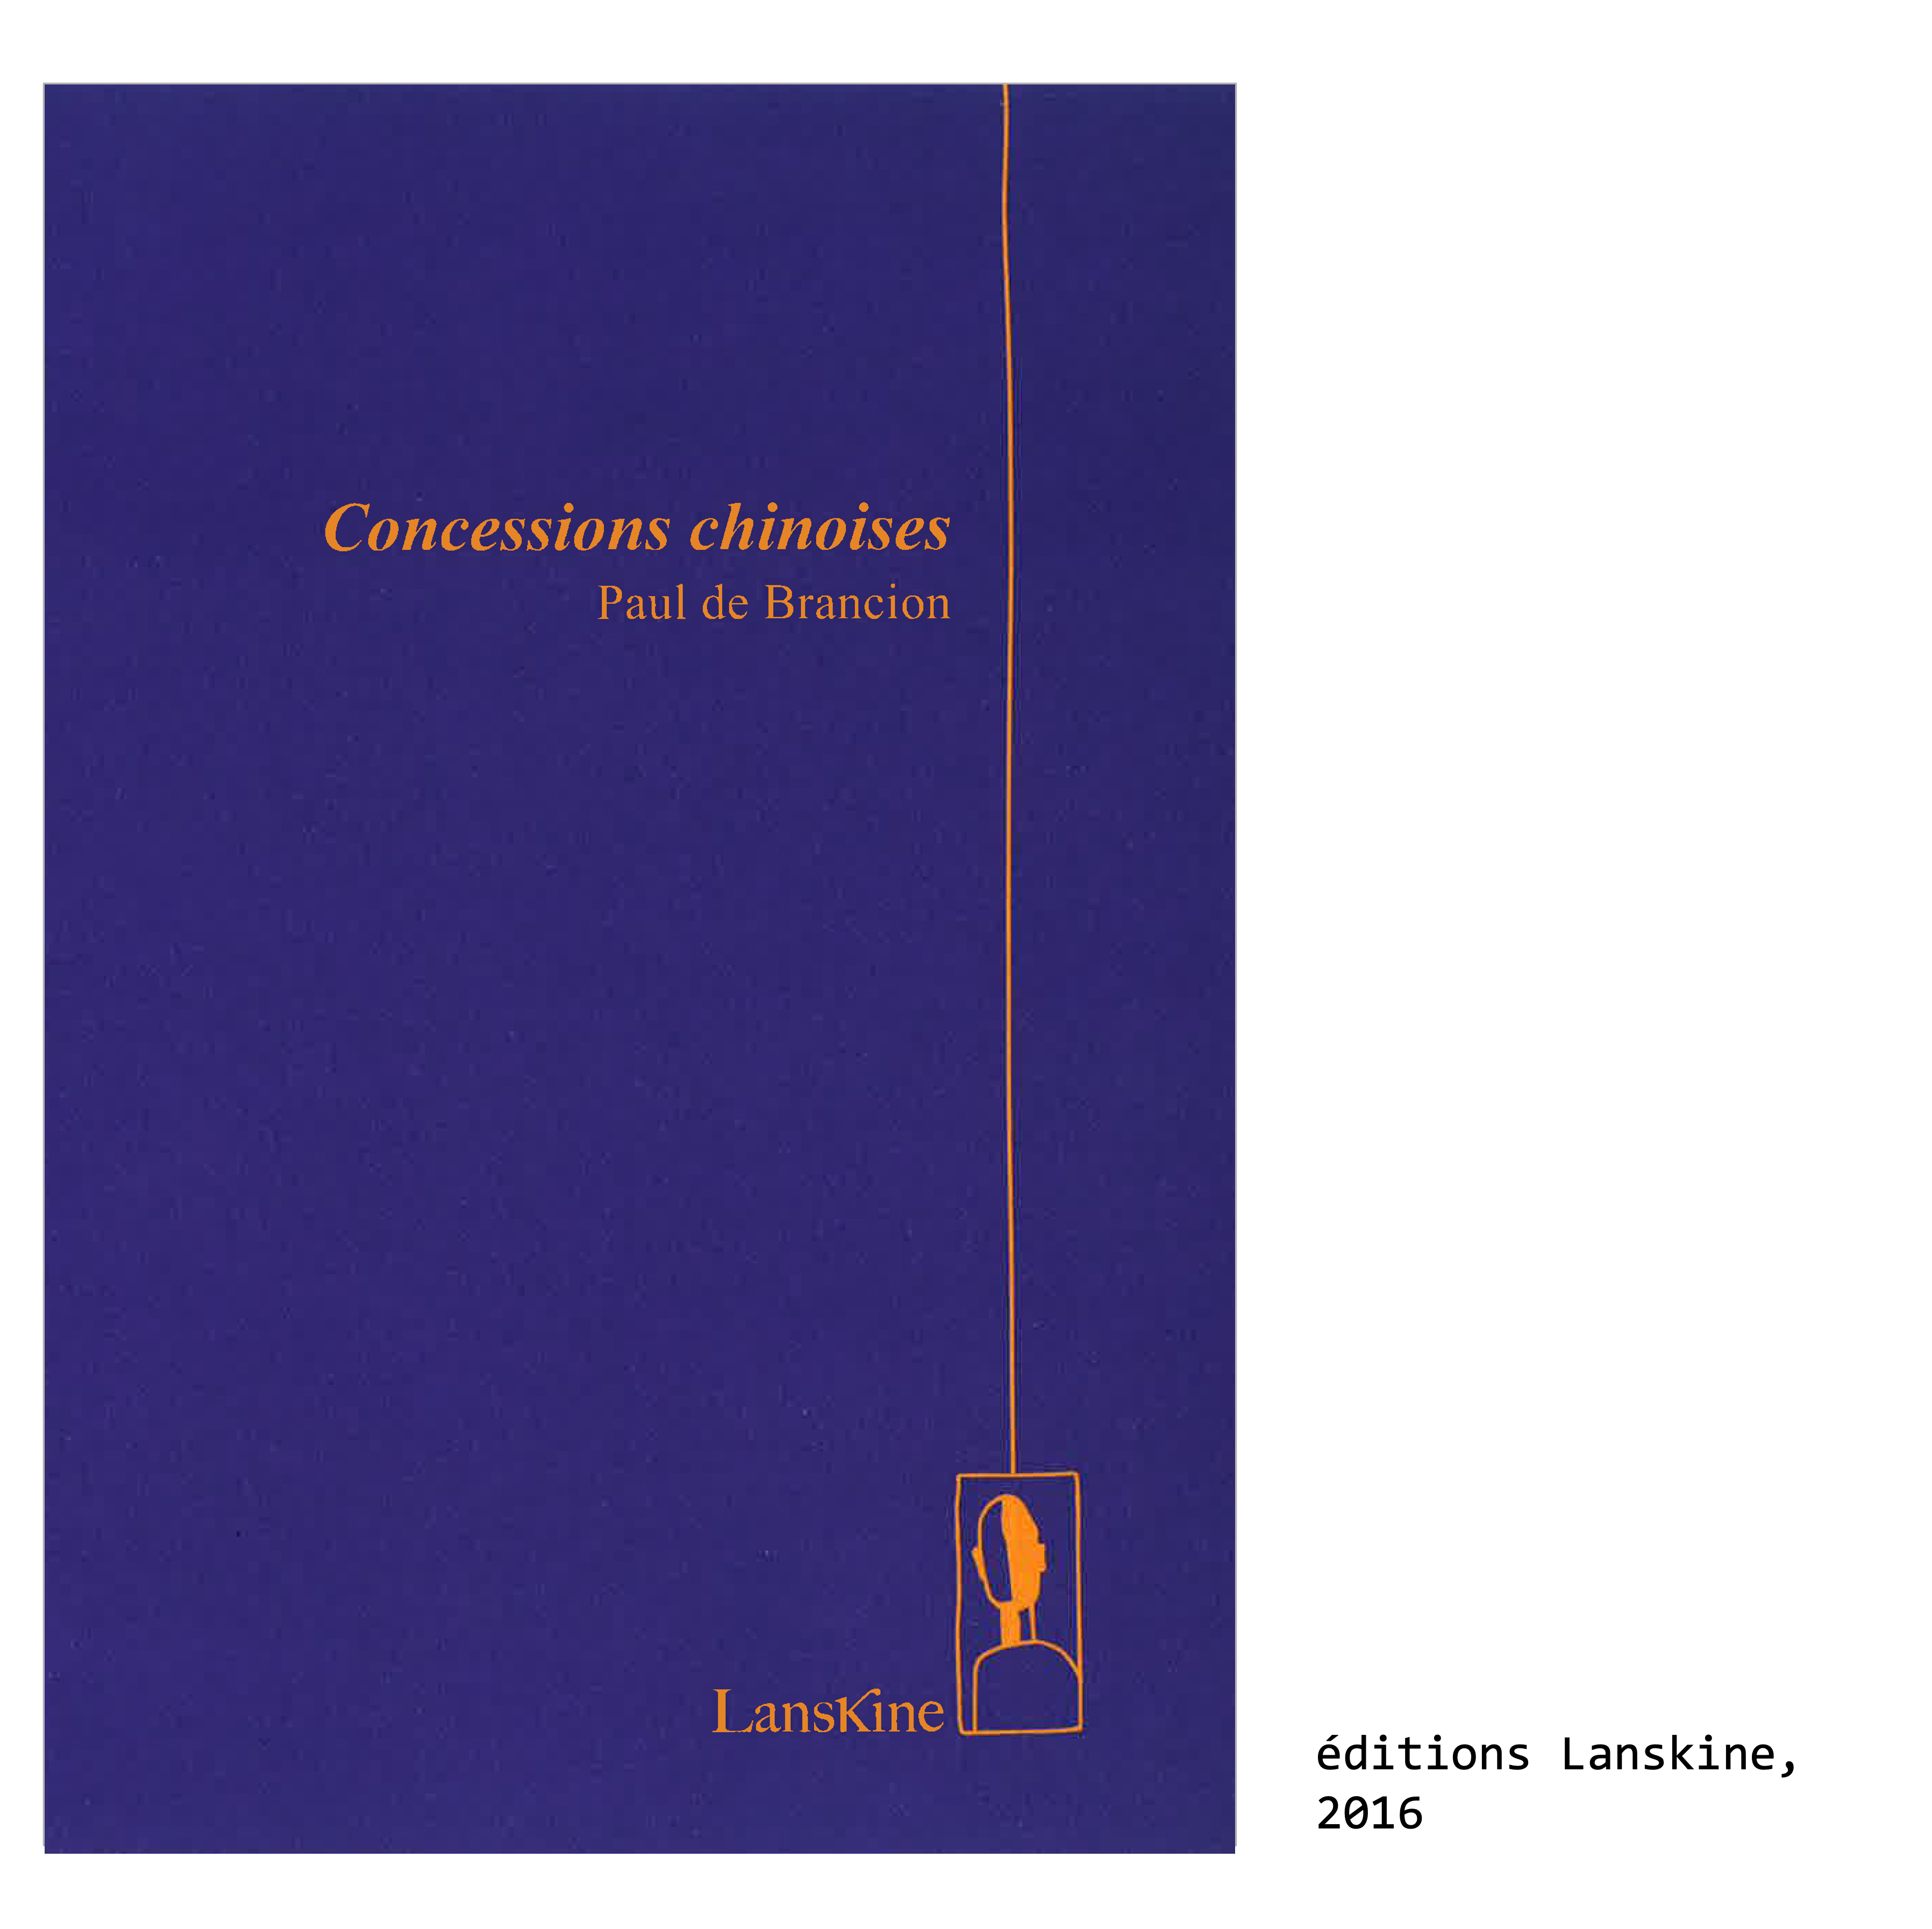 Couverture du livre de Paul de Brancion, écrivain et poète : Concessions chinoises, éditions Lanskine, 2016